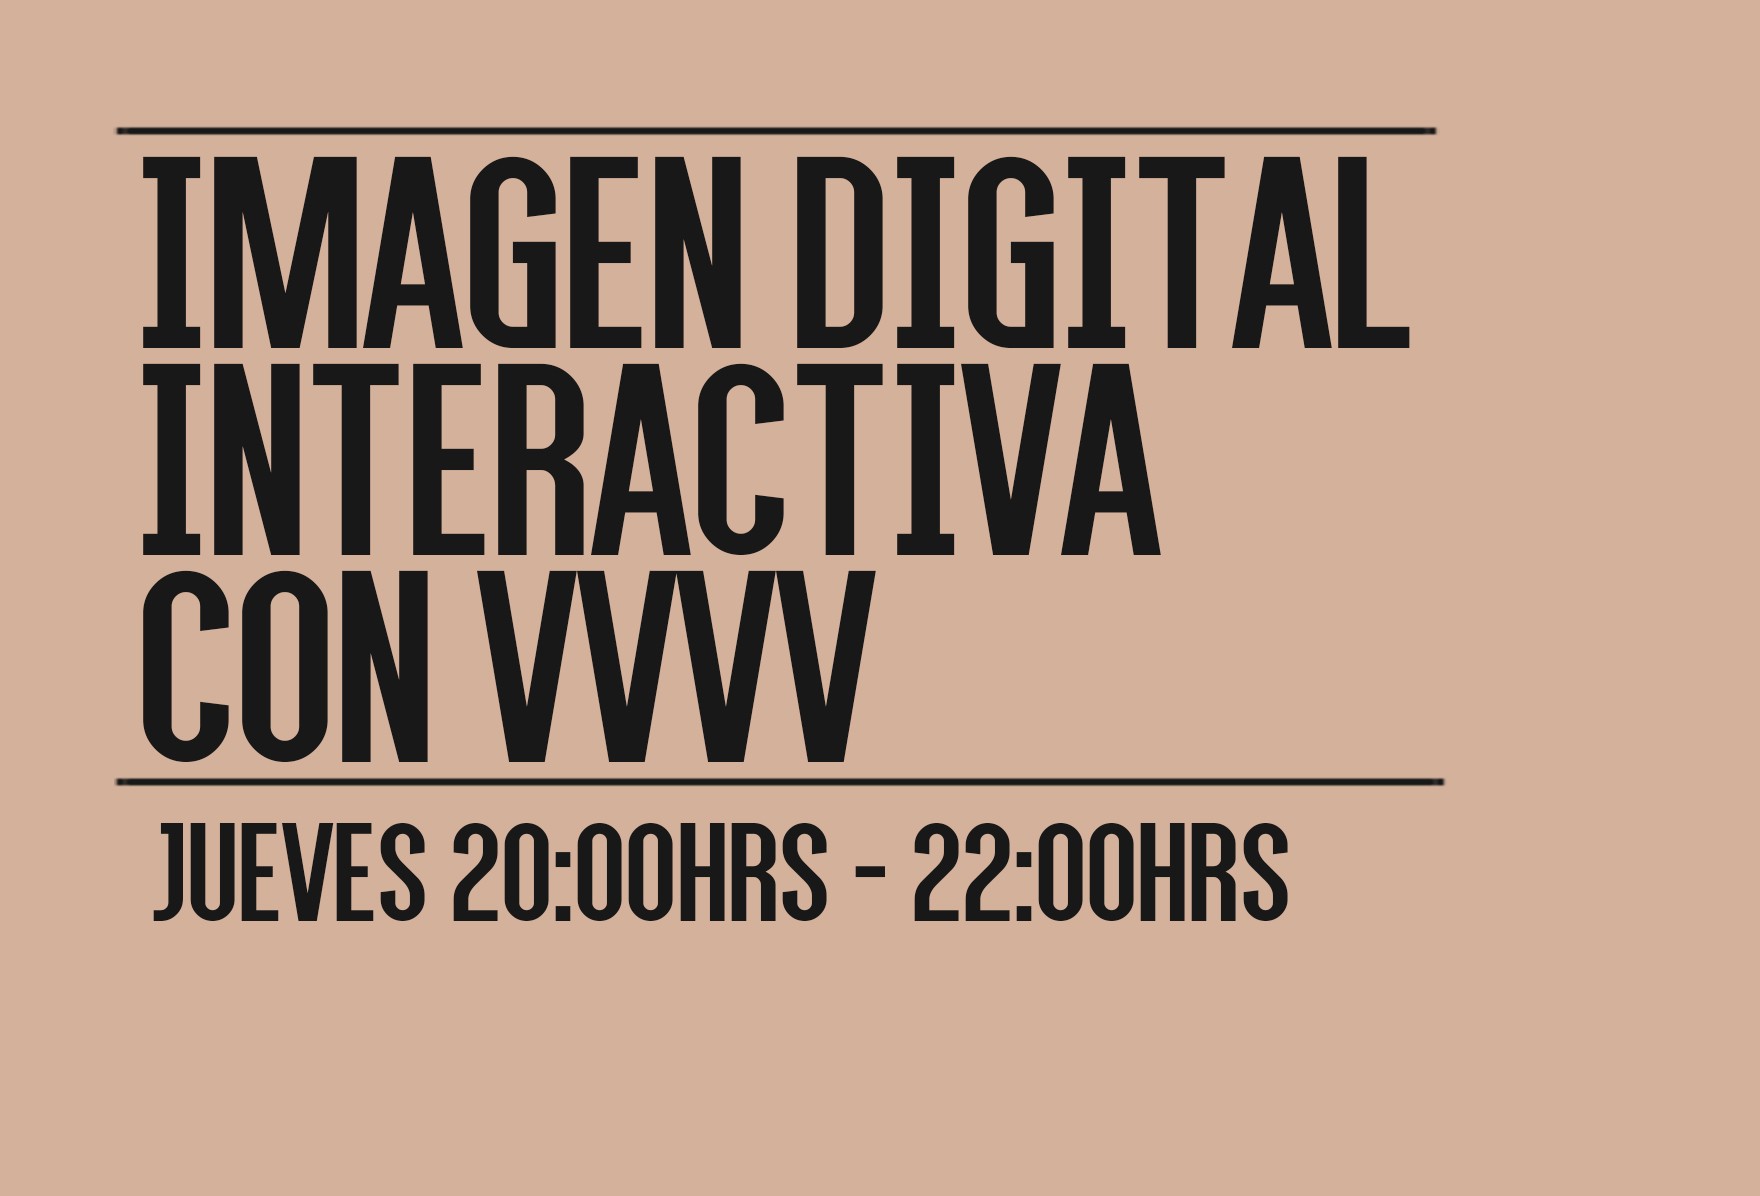 Imagen Digital Interactiva con VVVV